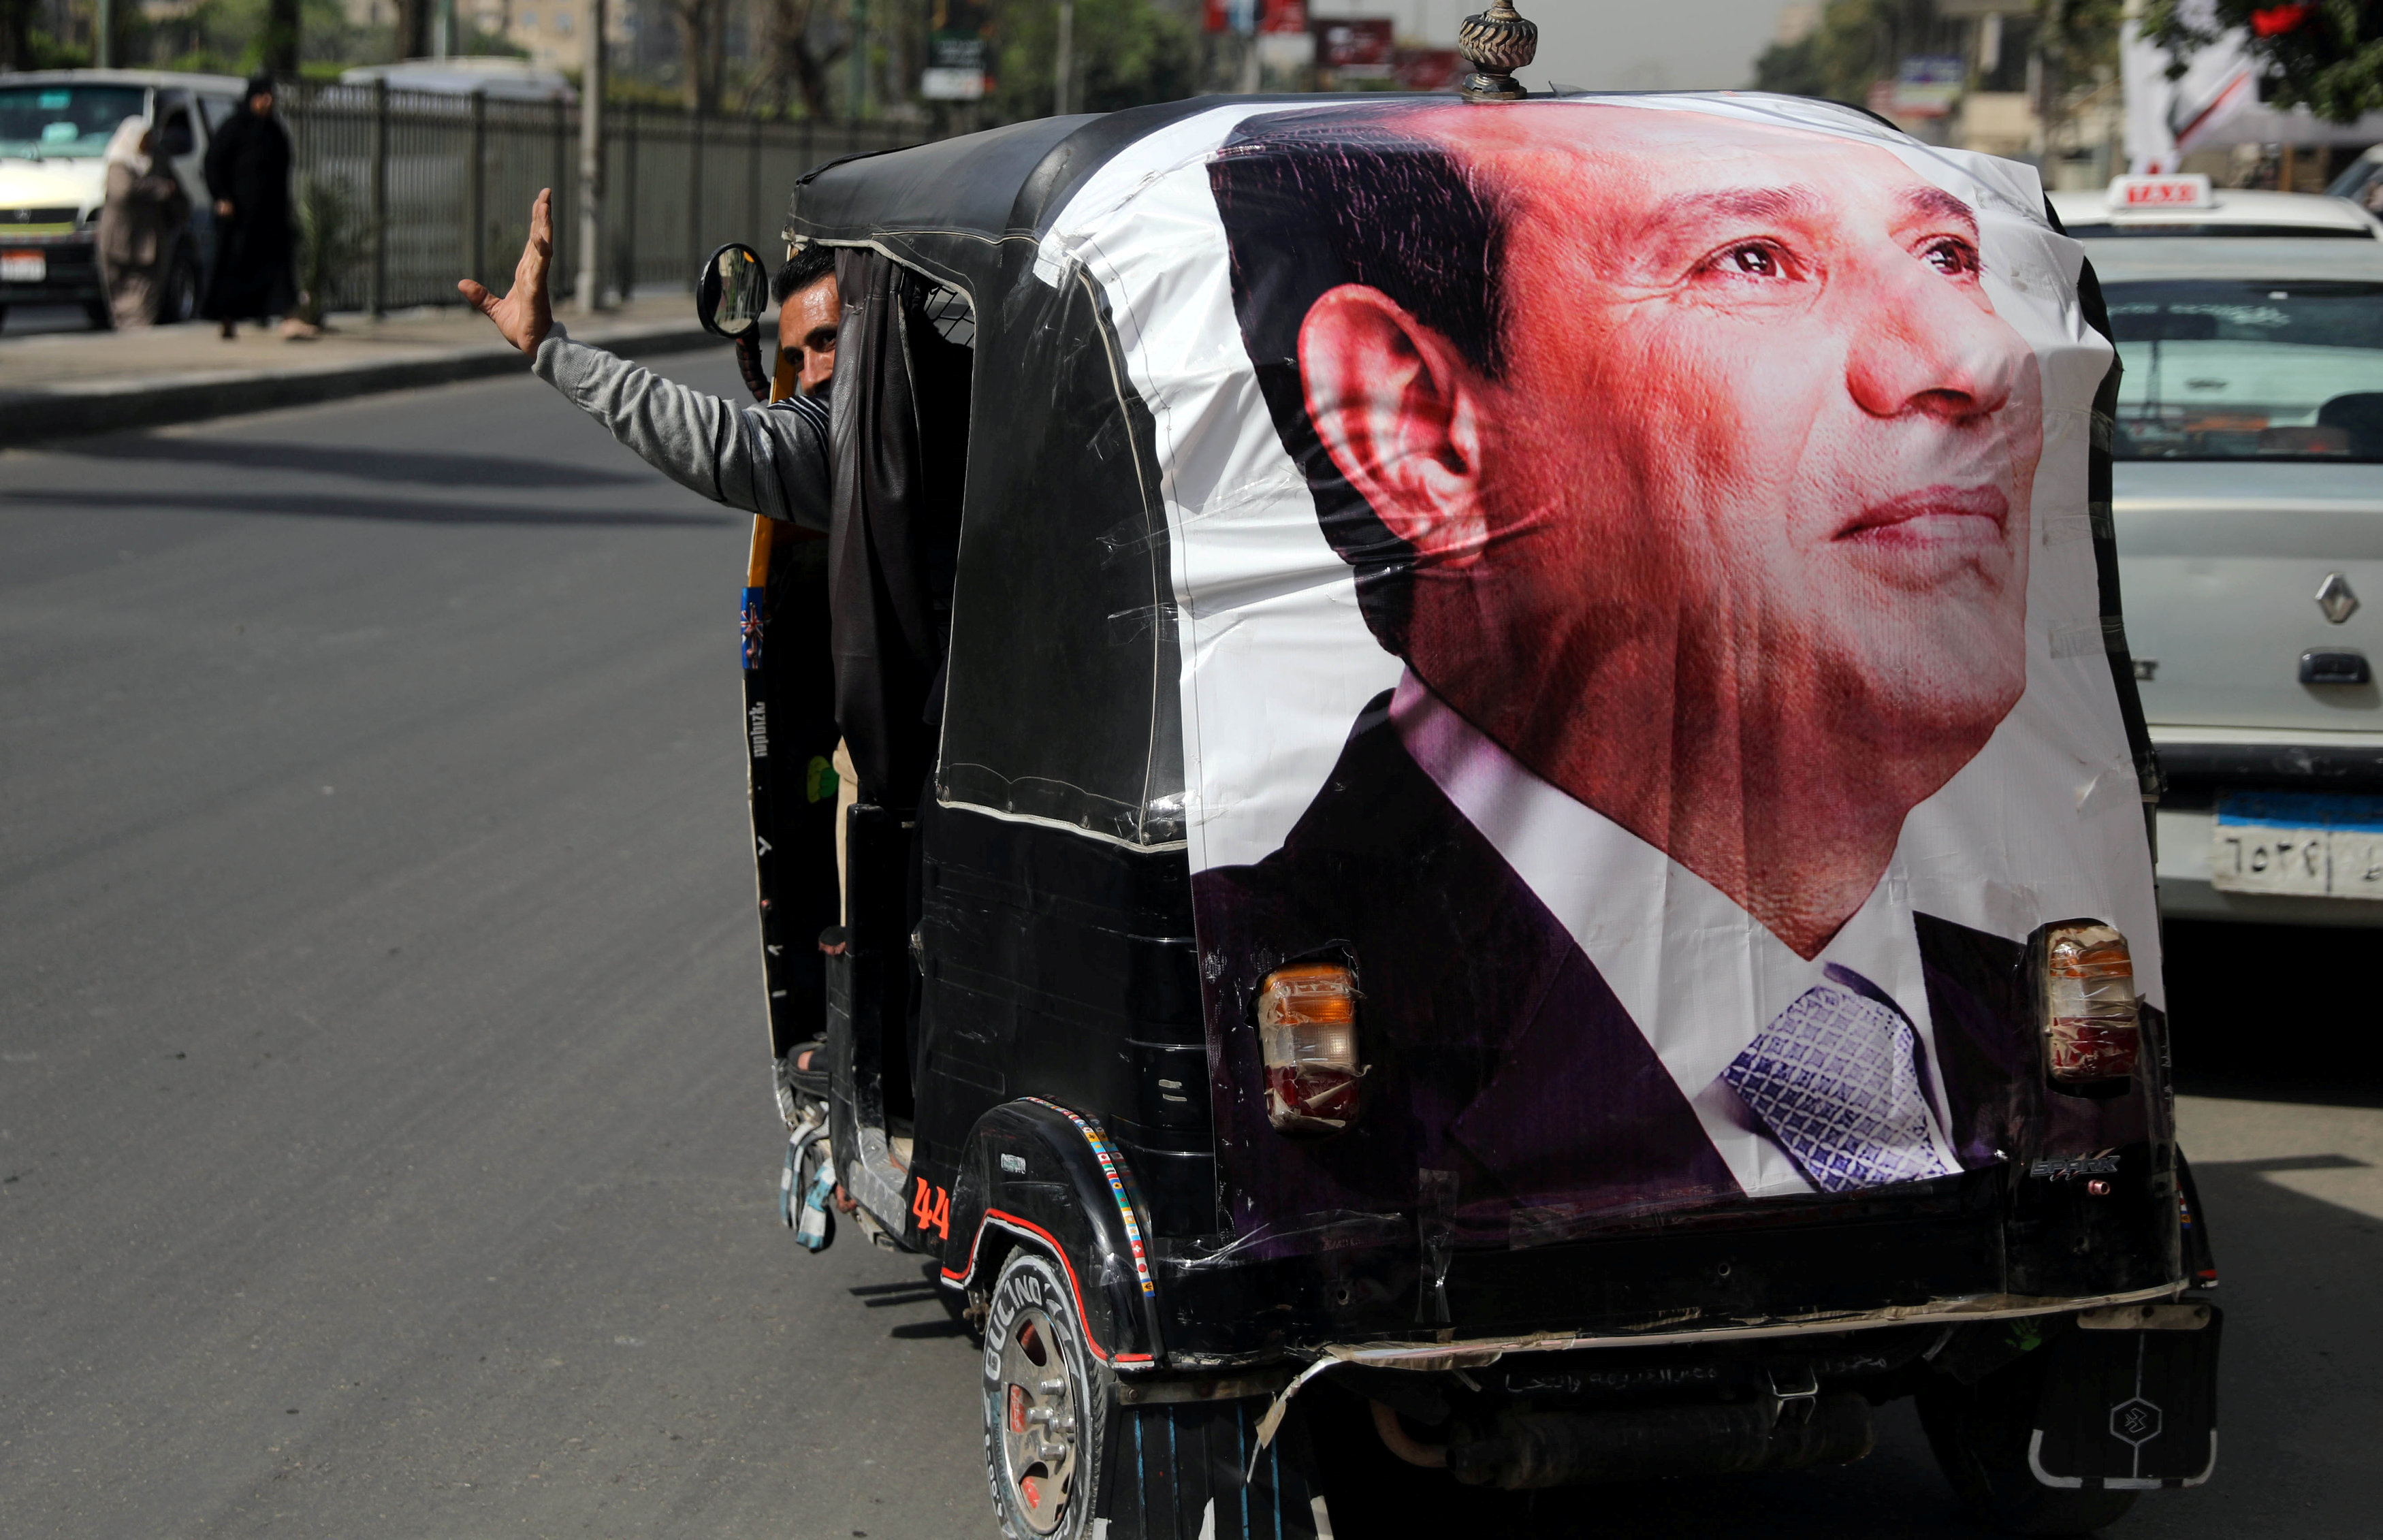 صورة للرئيس المصري عبدالفتاح السيسي معلقة على مركبة في القاهرة خلال الانتخابات المصرية الأخيرة، 27 مارس 2018. عمار عوض/ رويترز 